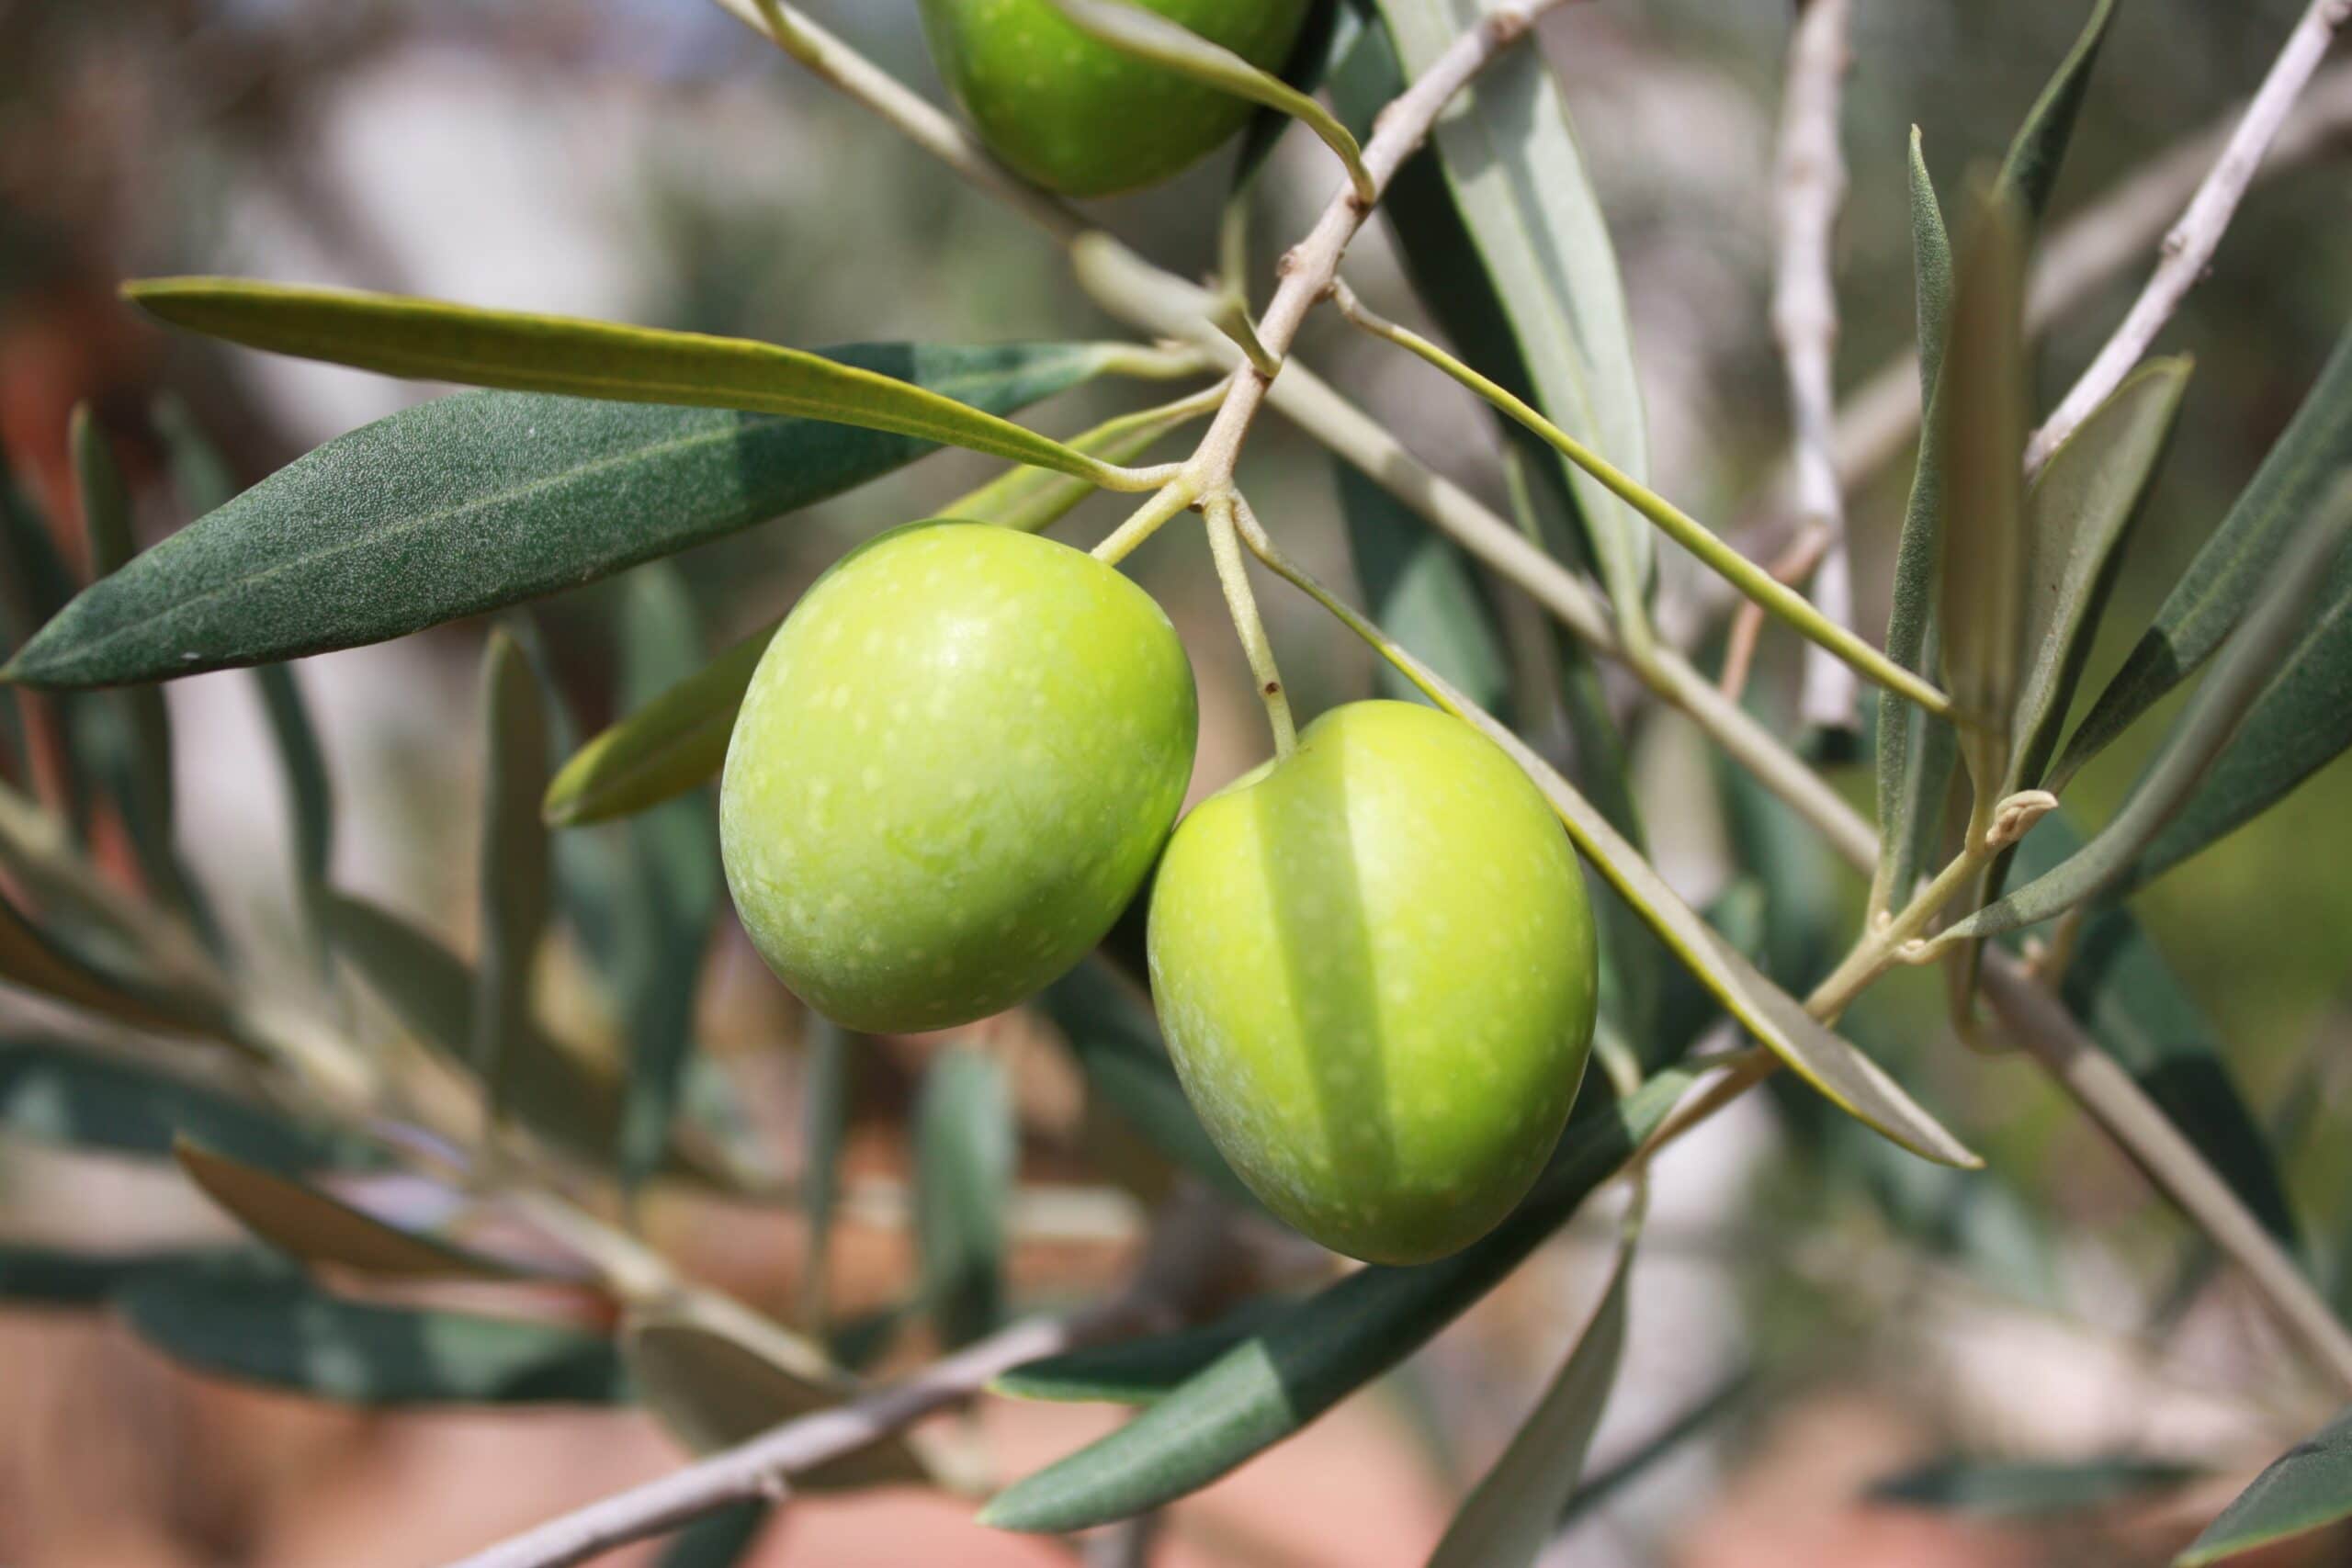 Nace una nueva DOP para el aceite de oliva: Aceite Villuercas Ibores Jara